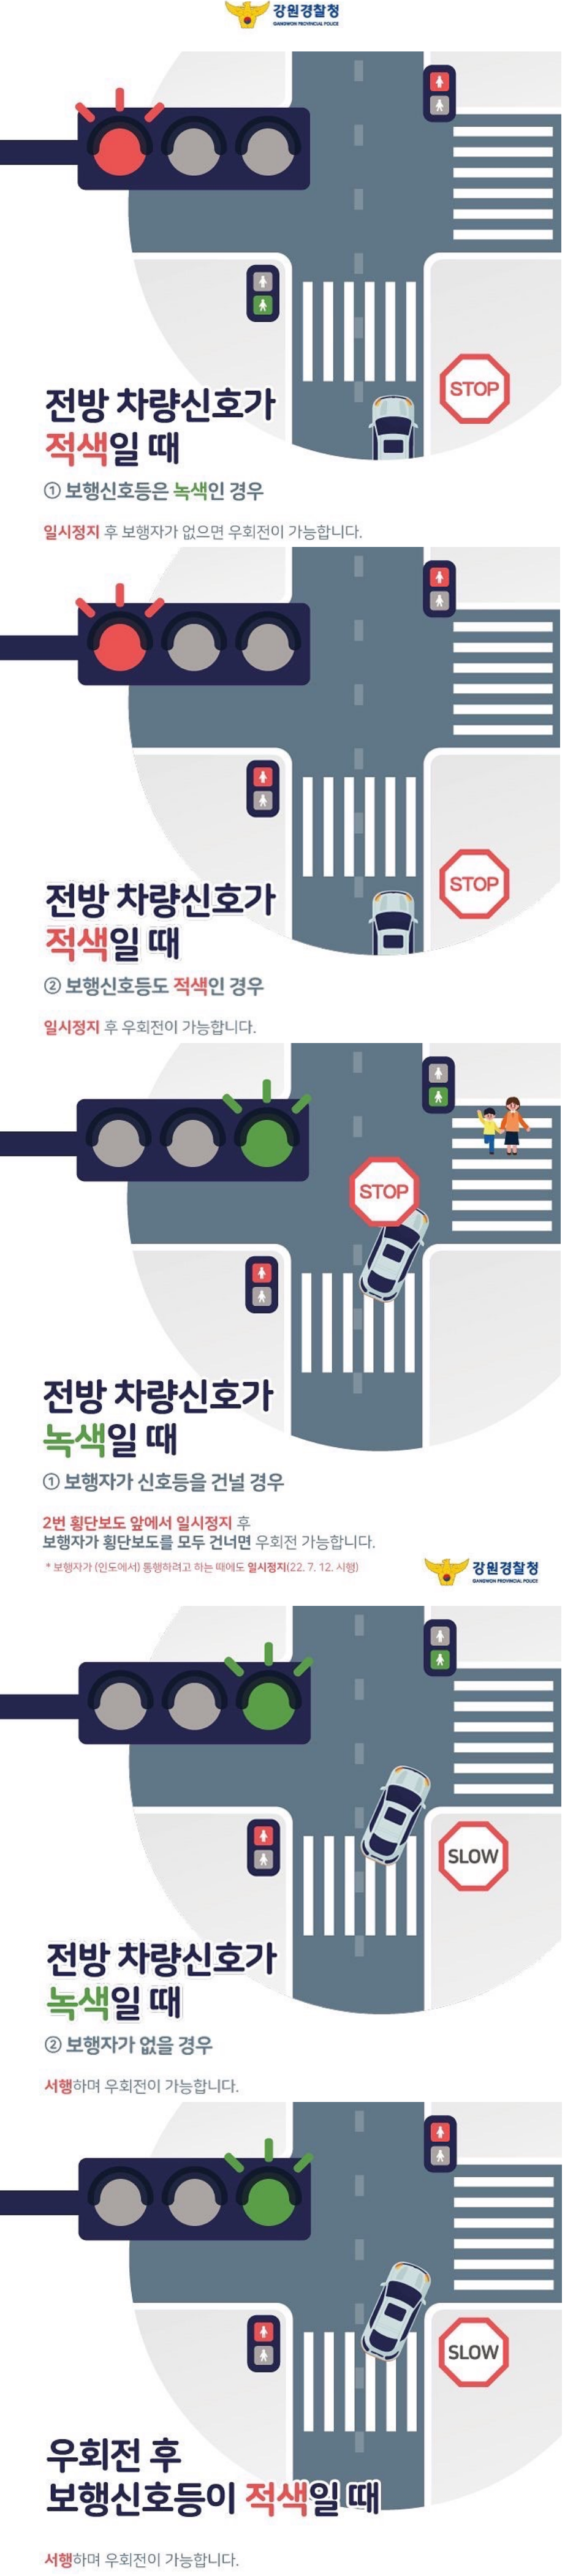 강원경찰청-교차로-우회전-통행방법